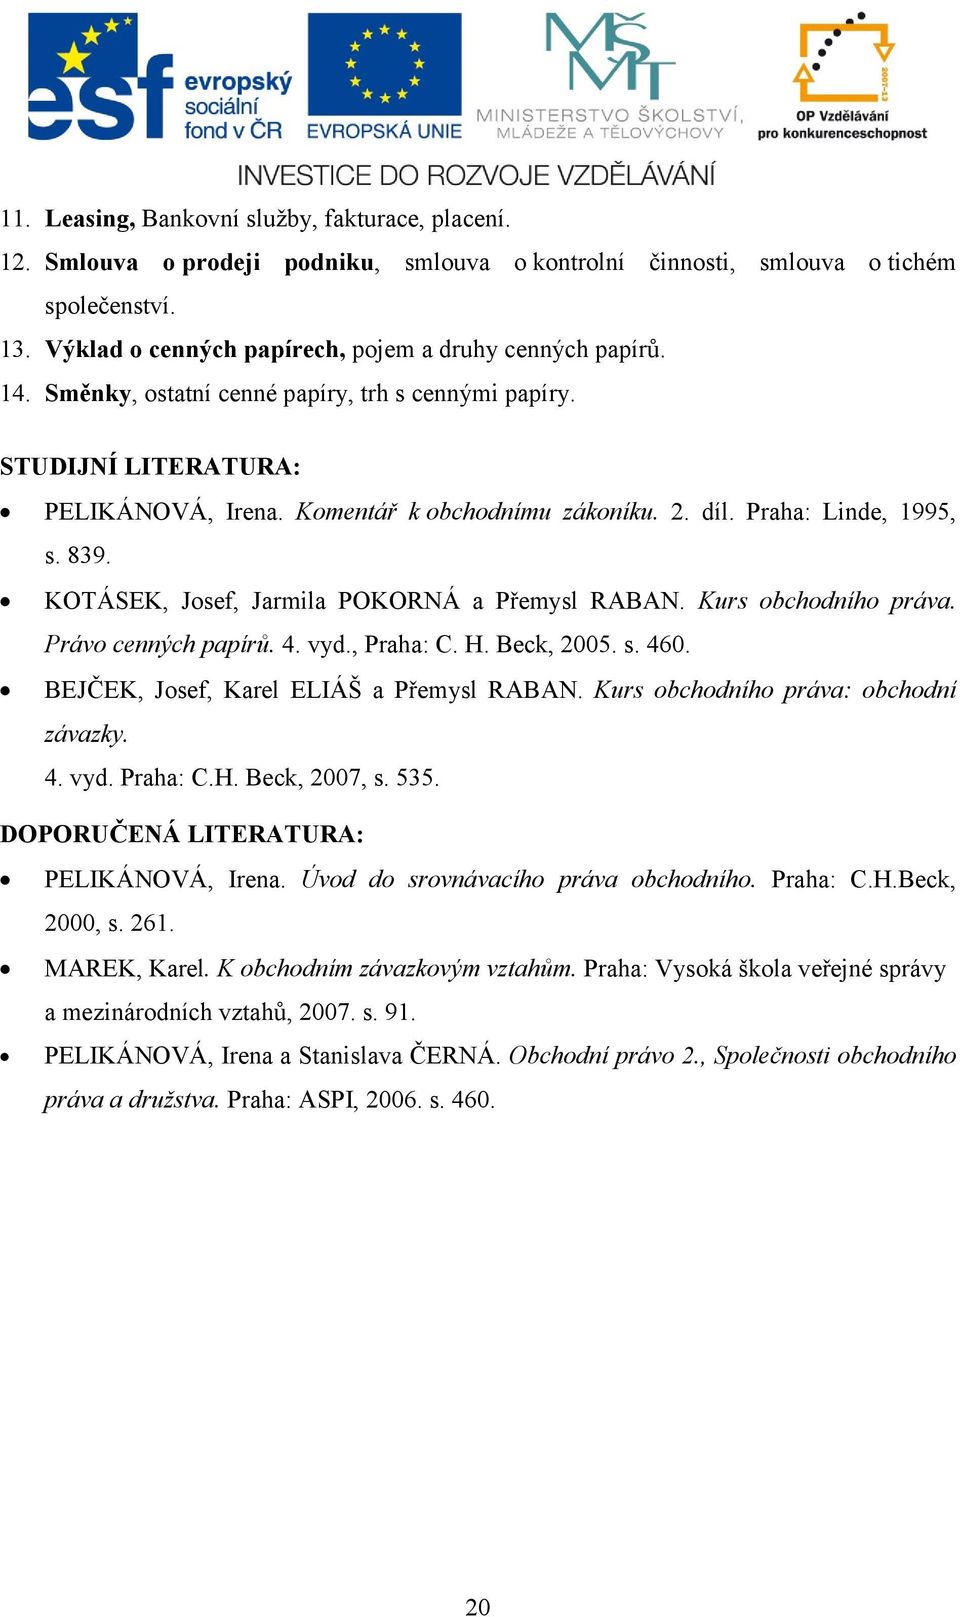 Praha: Linde, 1995, s. 839. KOTÁSEK, Josef, Jarmila POKORNÁ a Přemysl RABAN. Kurs obchodního práva. Právo cenných papírů. 4. vyd., Praha: C. H. Beck, 2005. s. 460.